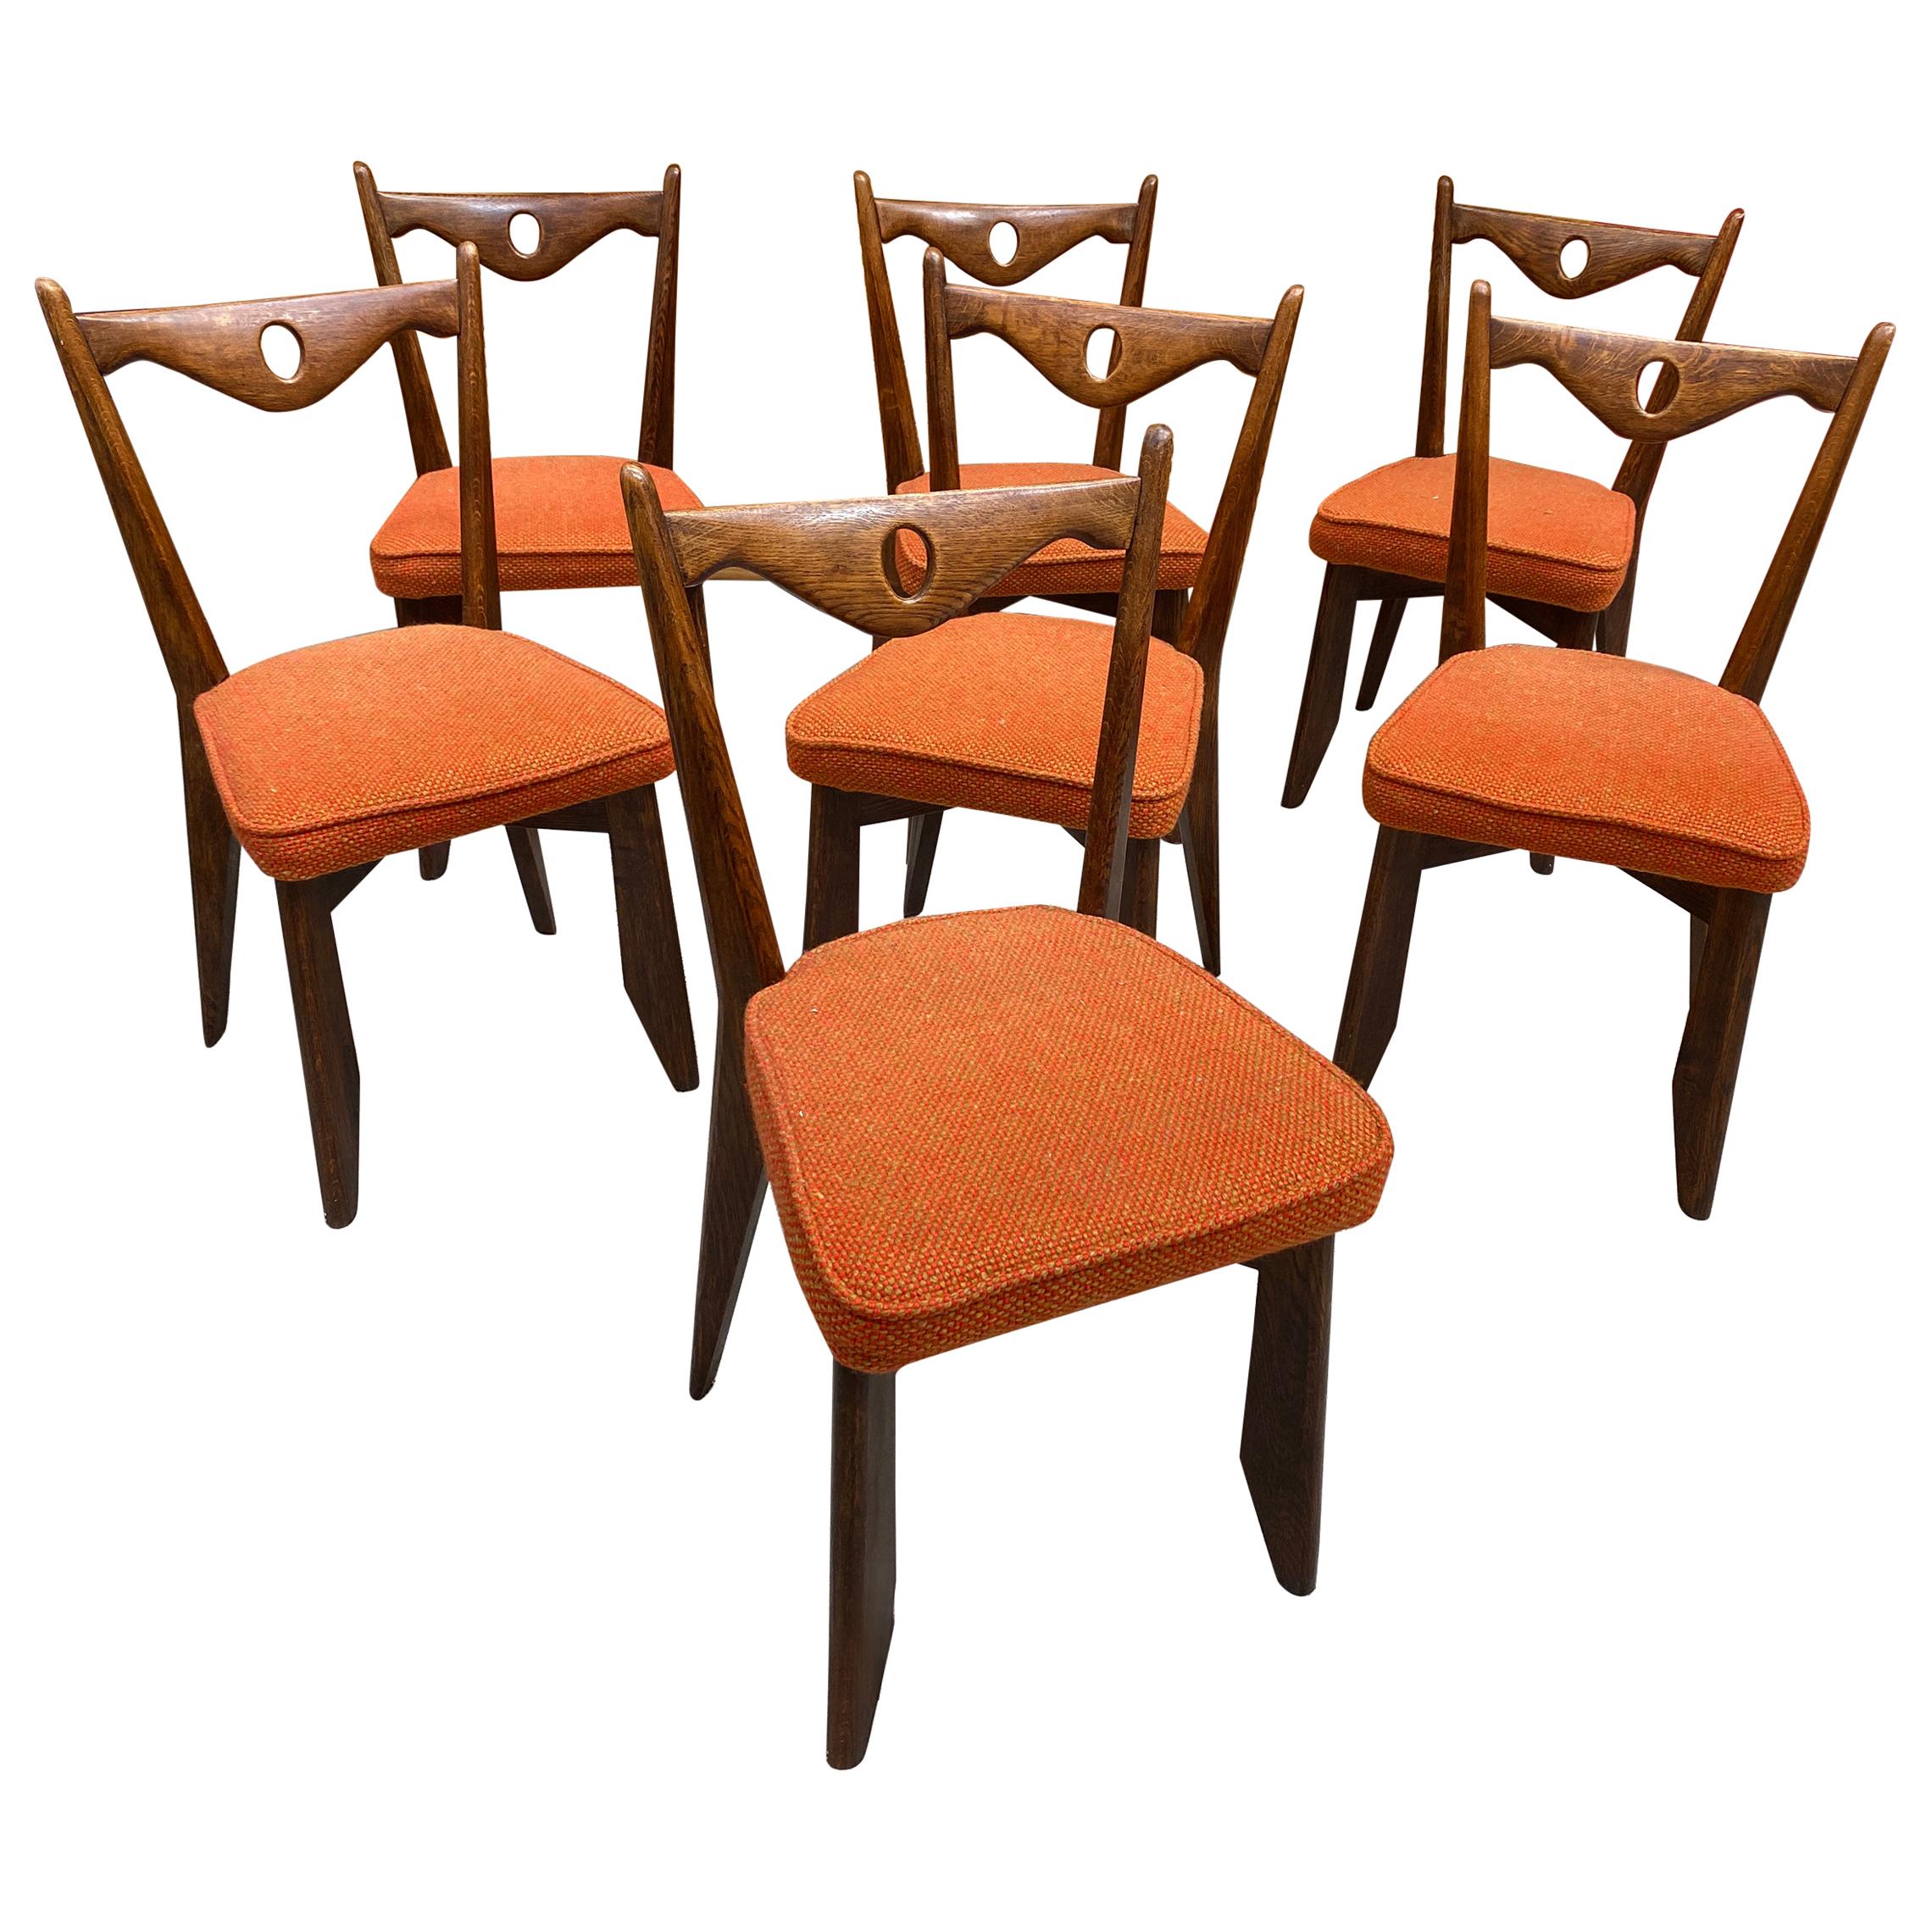 Guillerme et Chambron, Sechs Stühle aus Eiche, Edition Votre Maison, um 1970